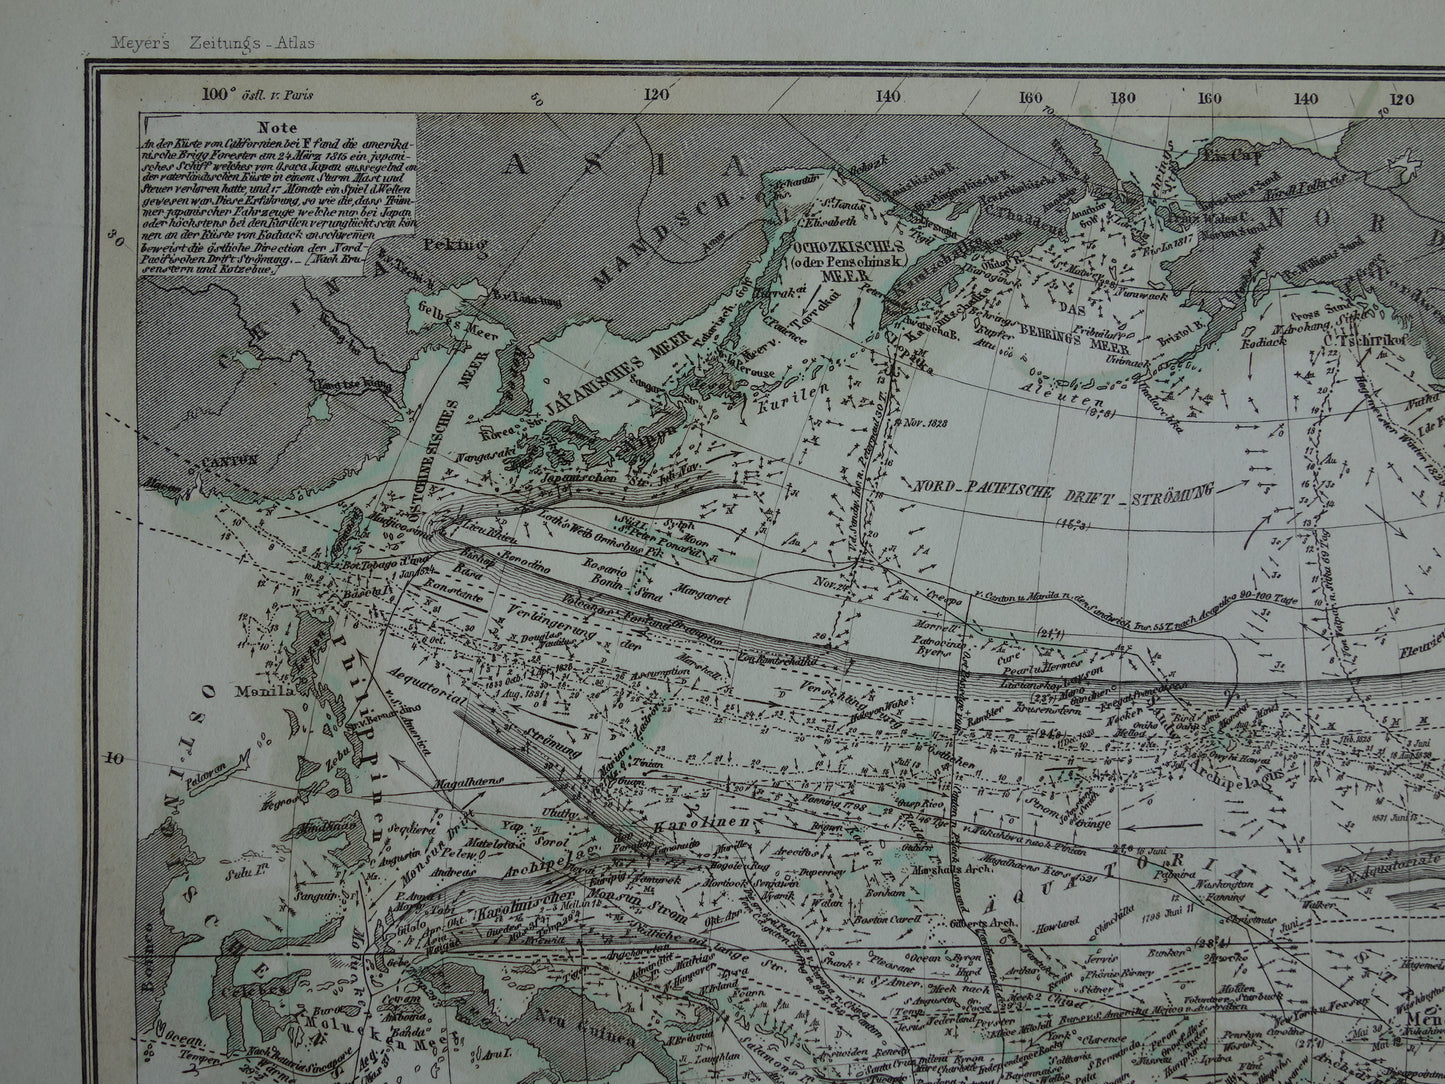 Antieke kaart van de Grote Oceaan Originele 170+ jaar oude antieke Duitse landkaart zeekaart Stille Oceaan